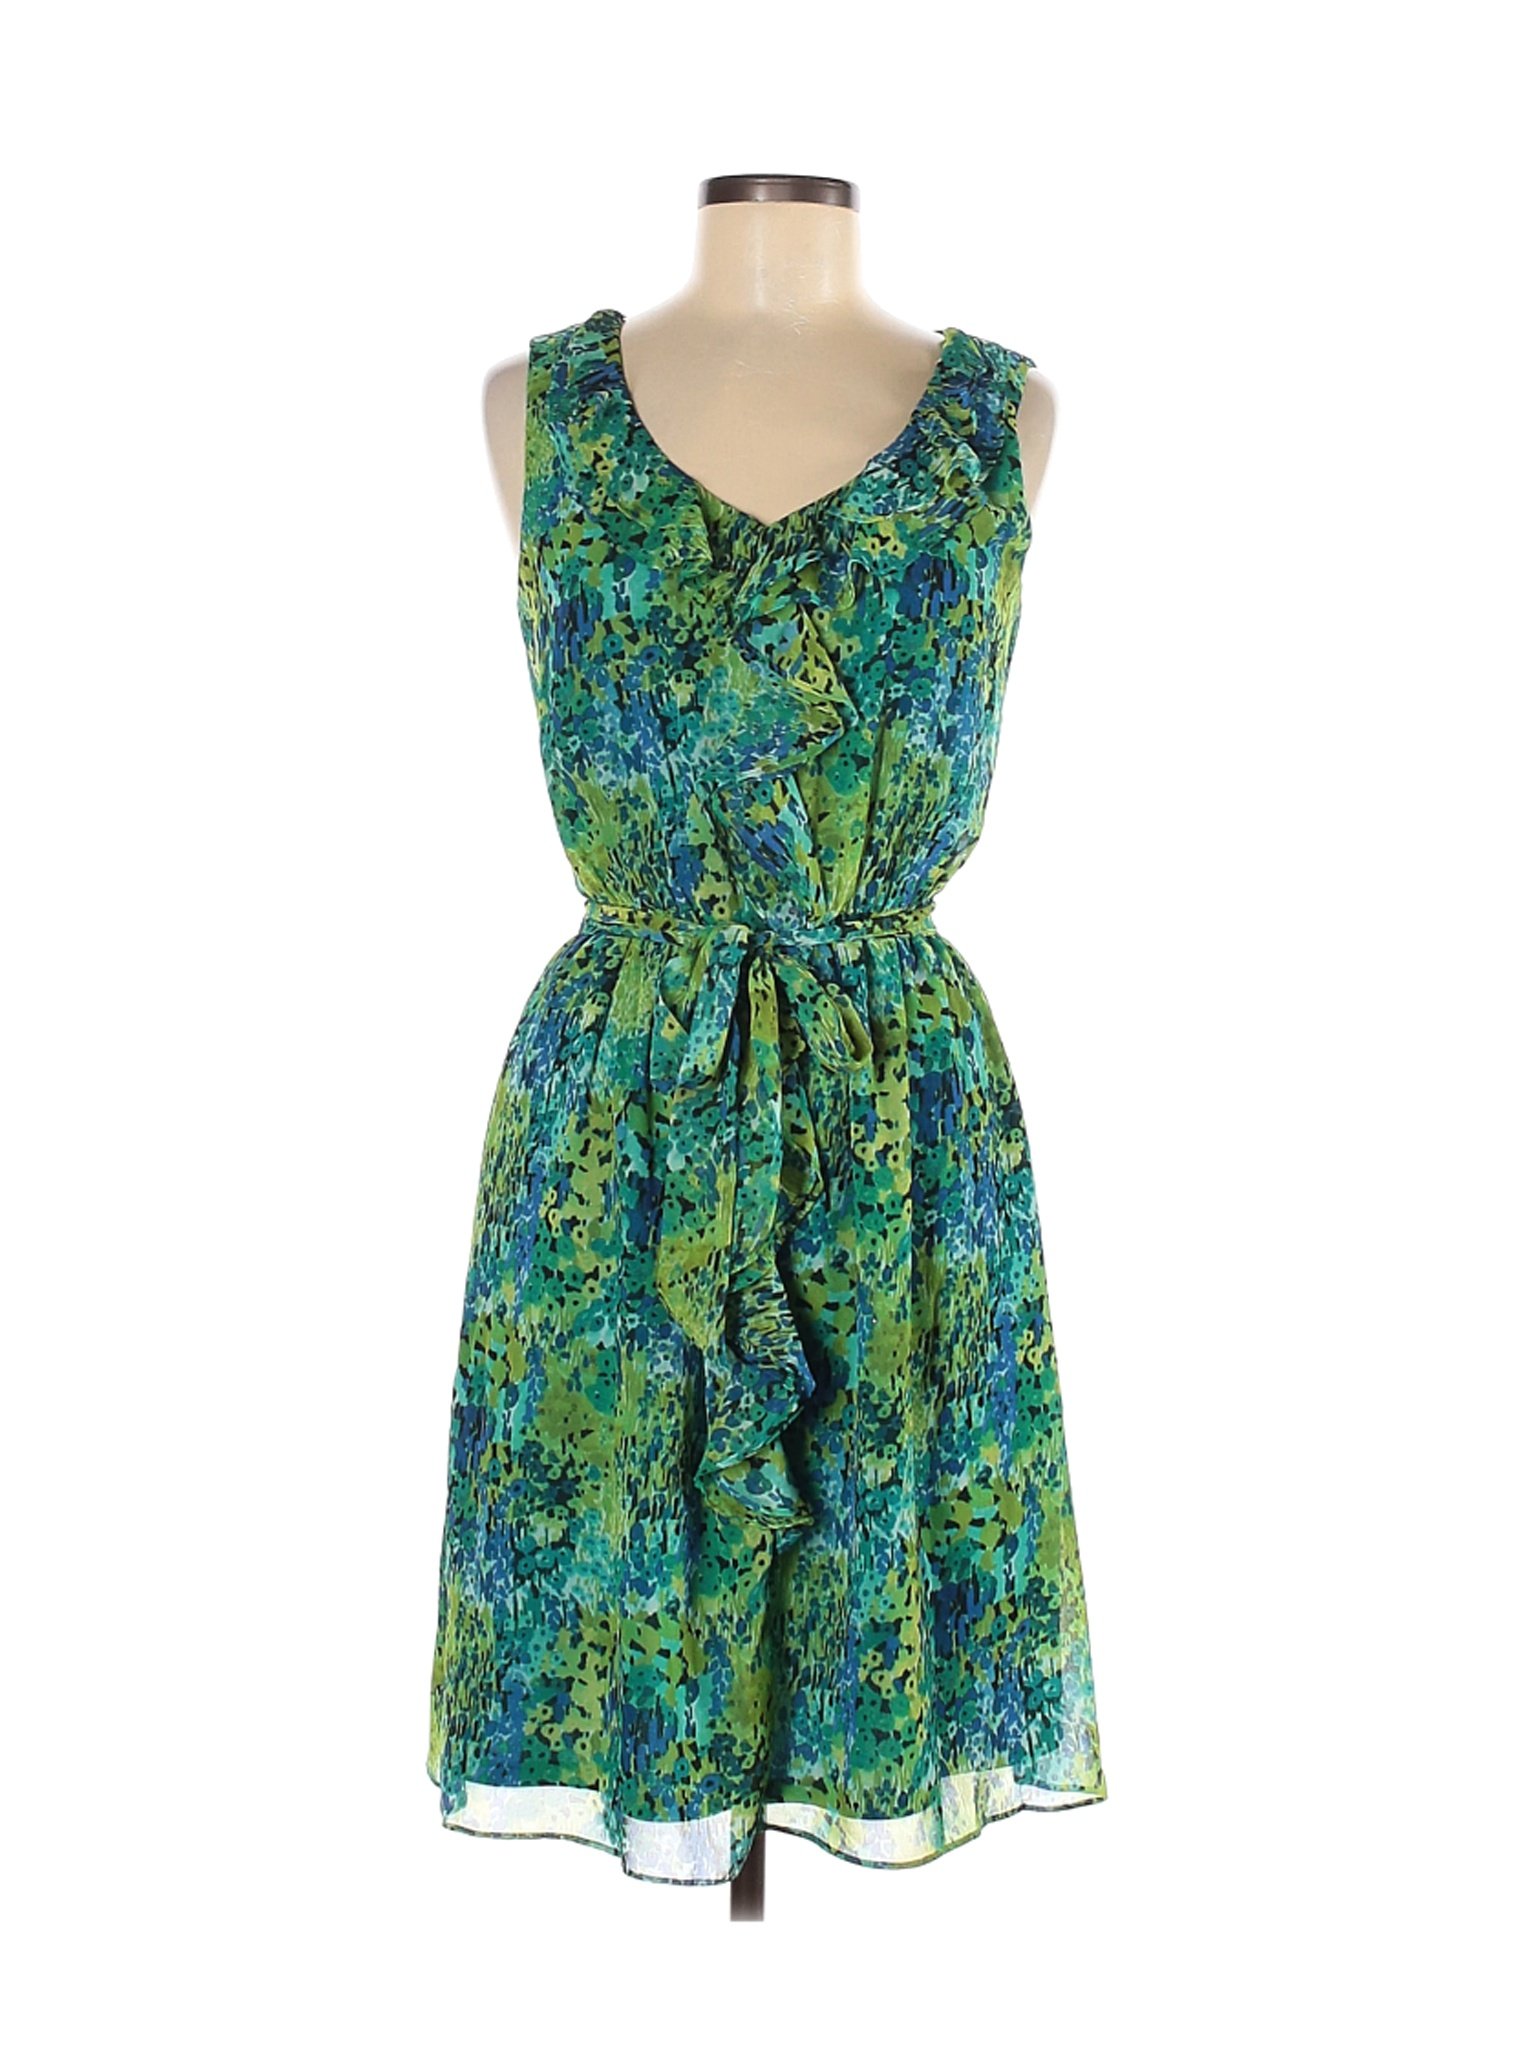 Nine West Women Green Casual Dress 6 | eBay